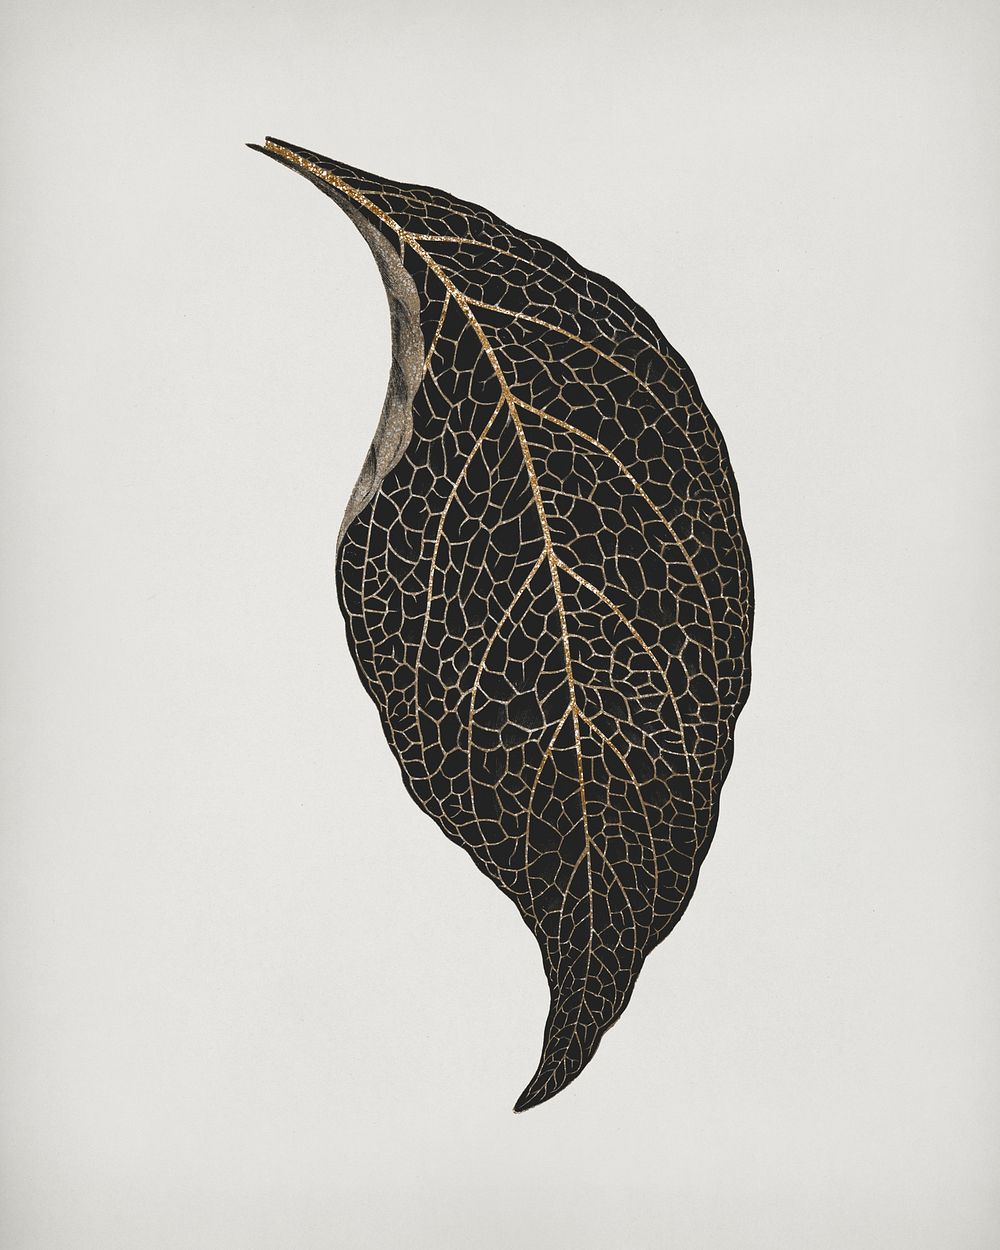 Adelaster Albivenis, engraved leaf vintage illustration, remix from original artwork of Benjamin Fawectt